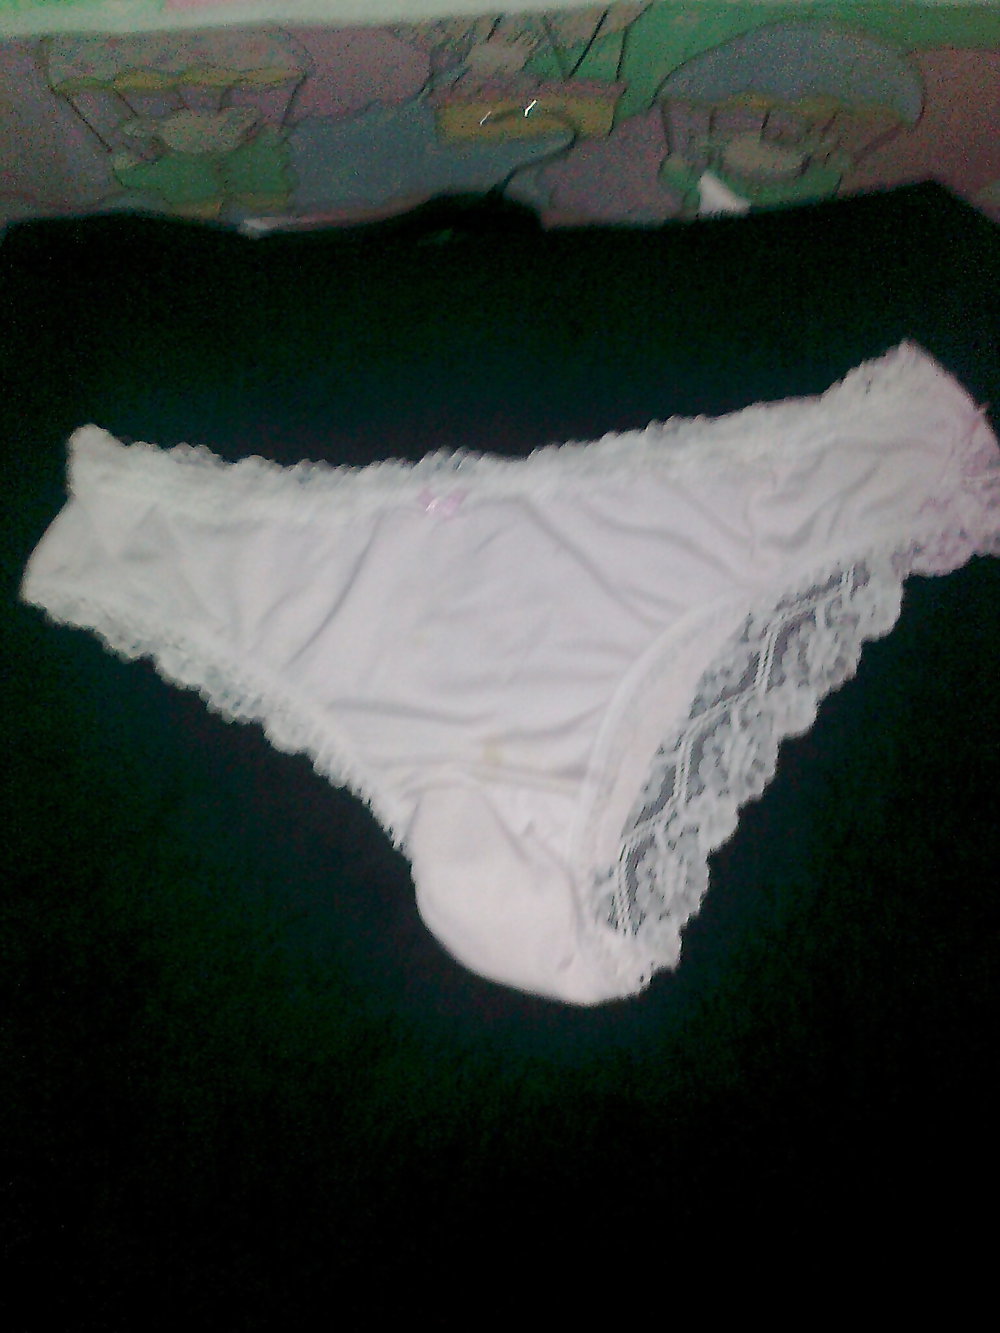 More milf panties #4342525